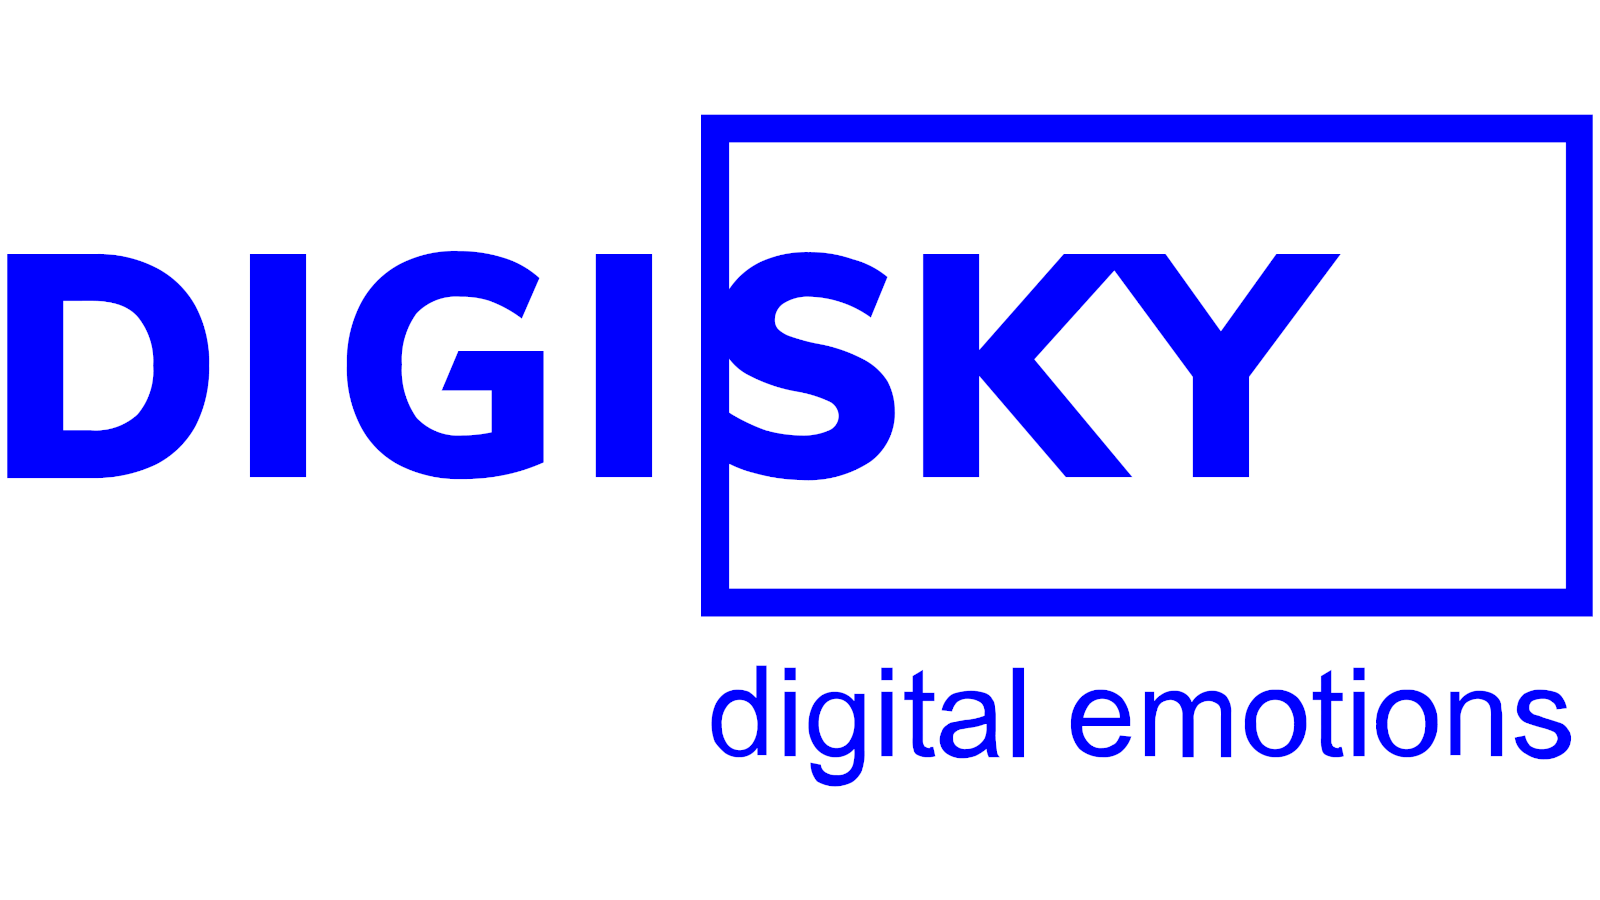 DigiSky